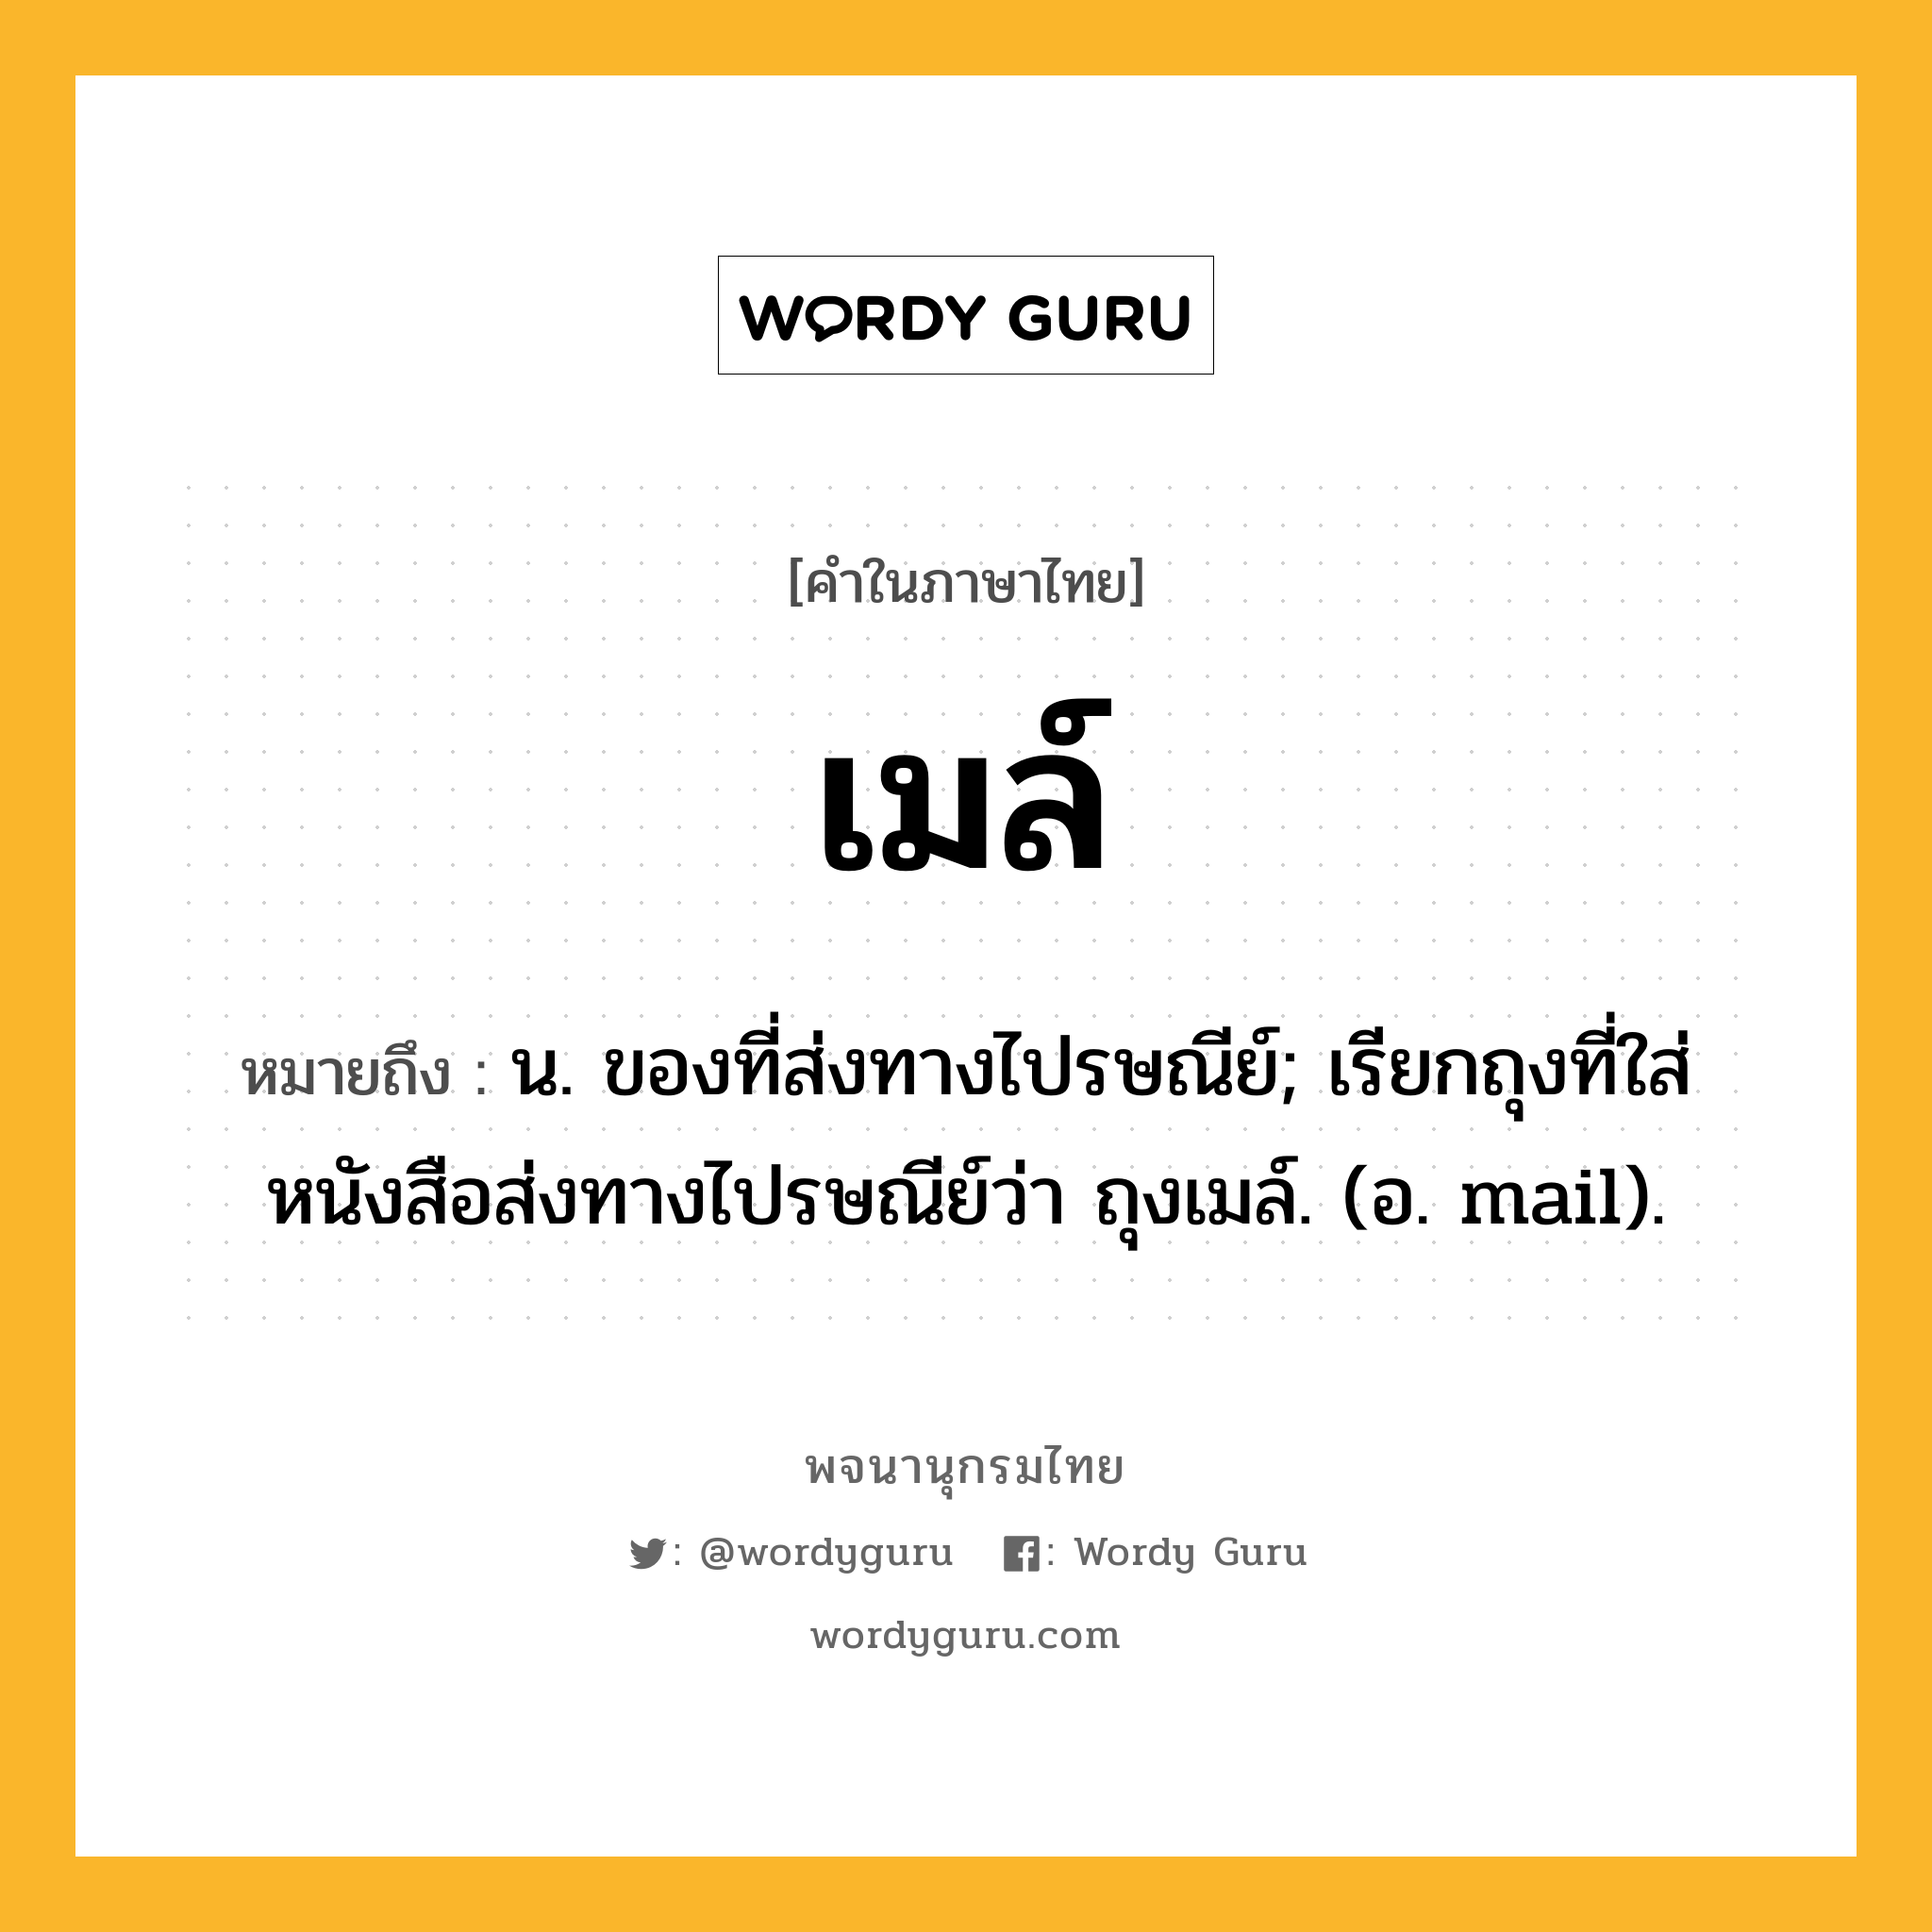 เมล์ ความหมาย หมายถึงอะไร?, คำในภาษาไทย เมล์ หมายถึง น. ของที่ส่งทางไปรษณีย์; เรียกถุงที่ใส่หนังสือส่งทางไปรษณีย์ว่า ถุงเมล์. (อ. mail).